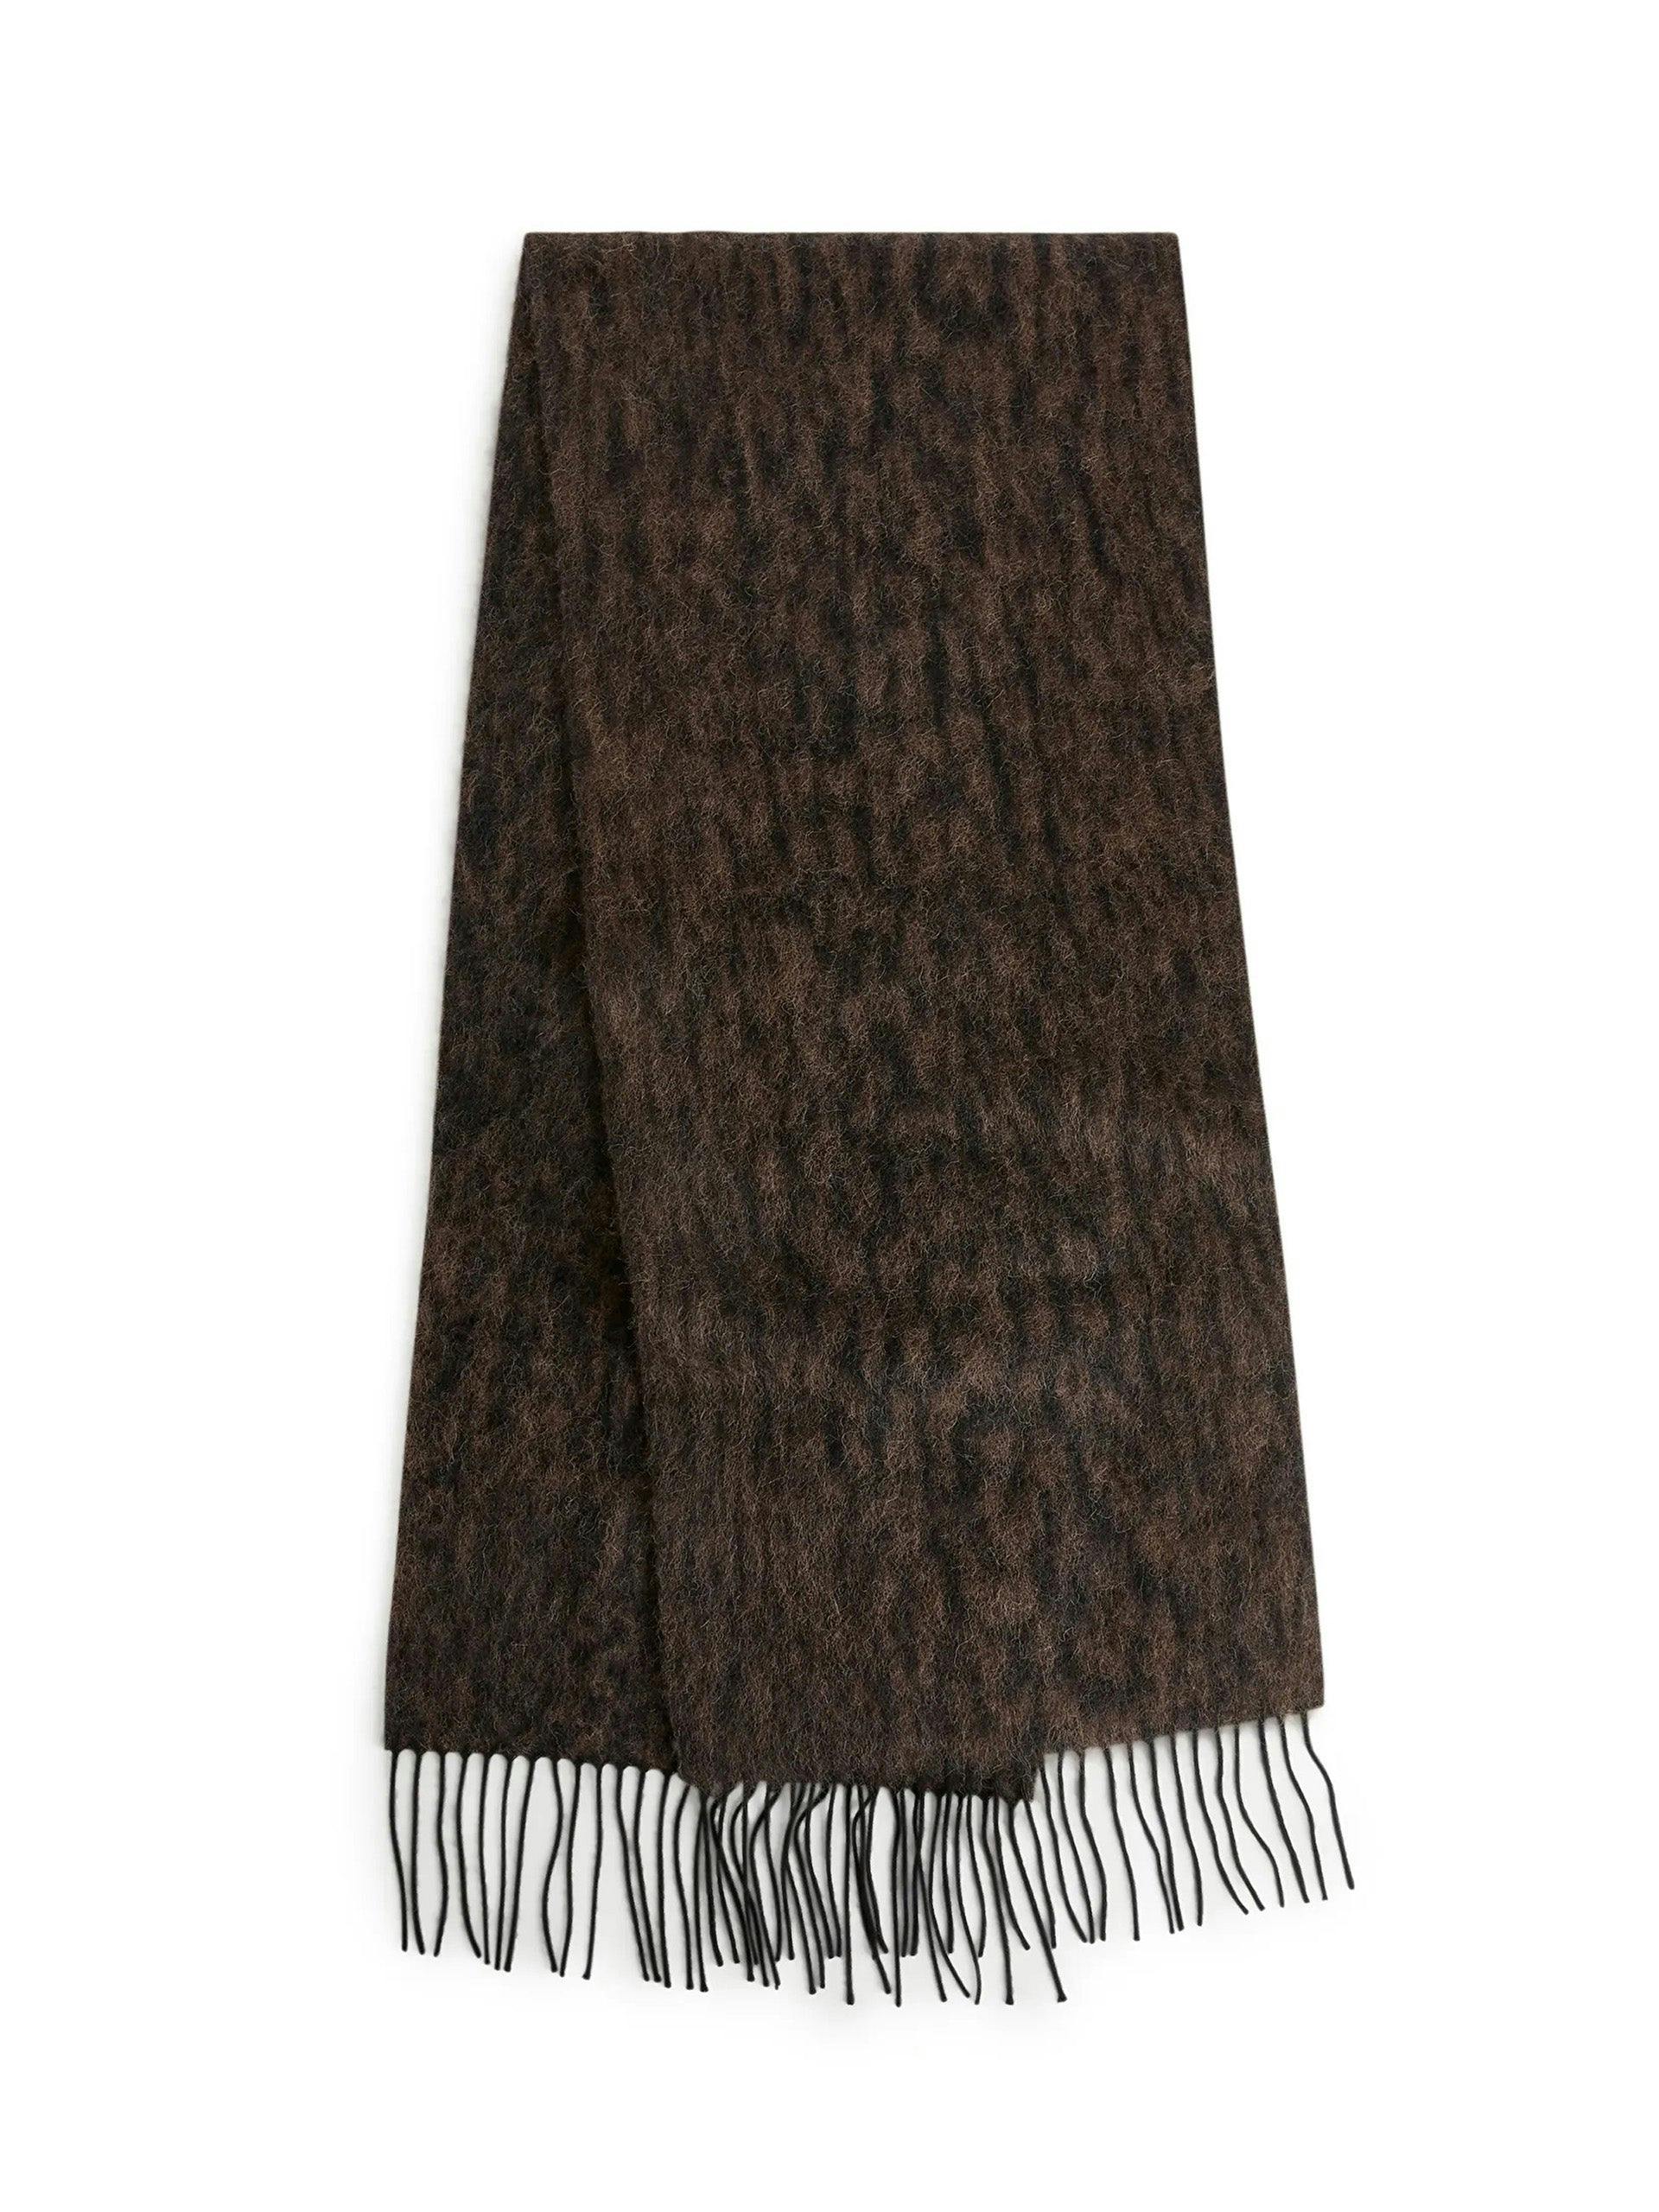 Black and brown wool scarf